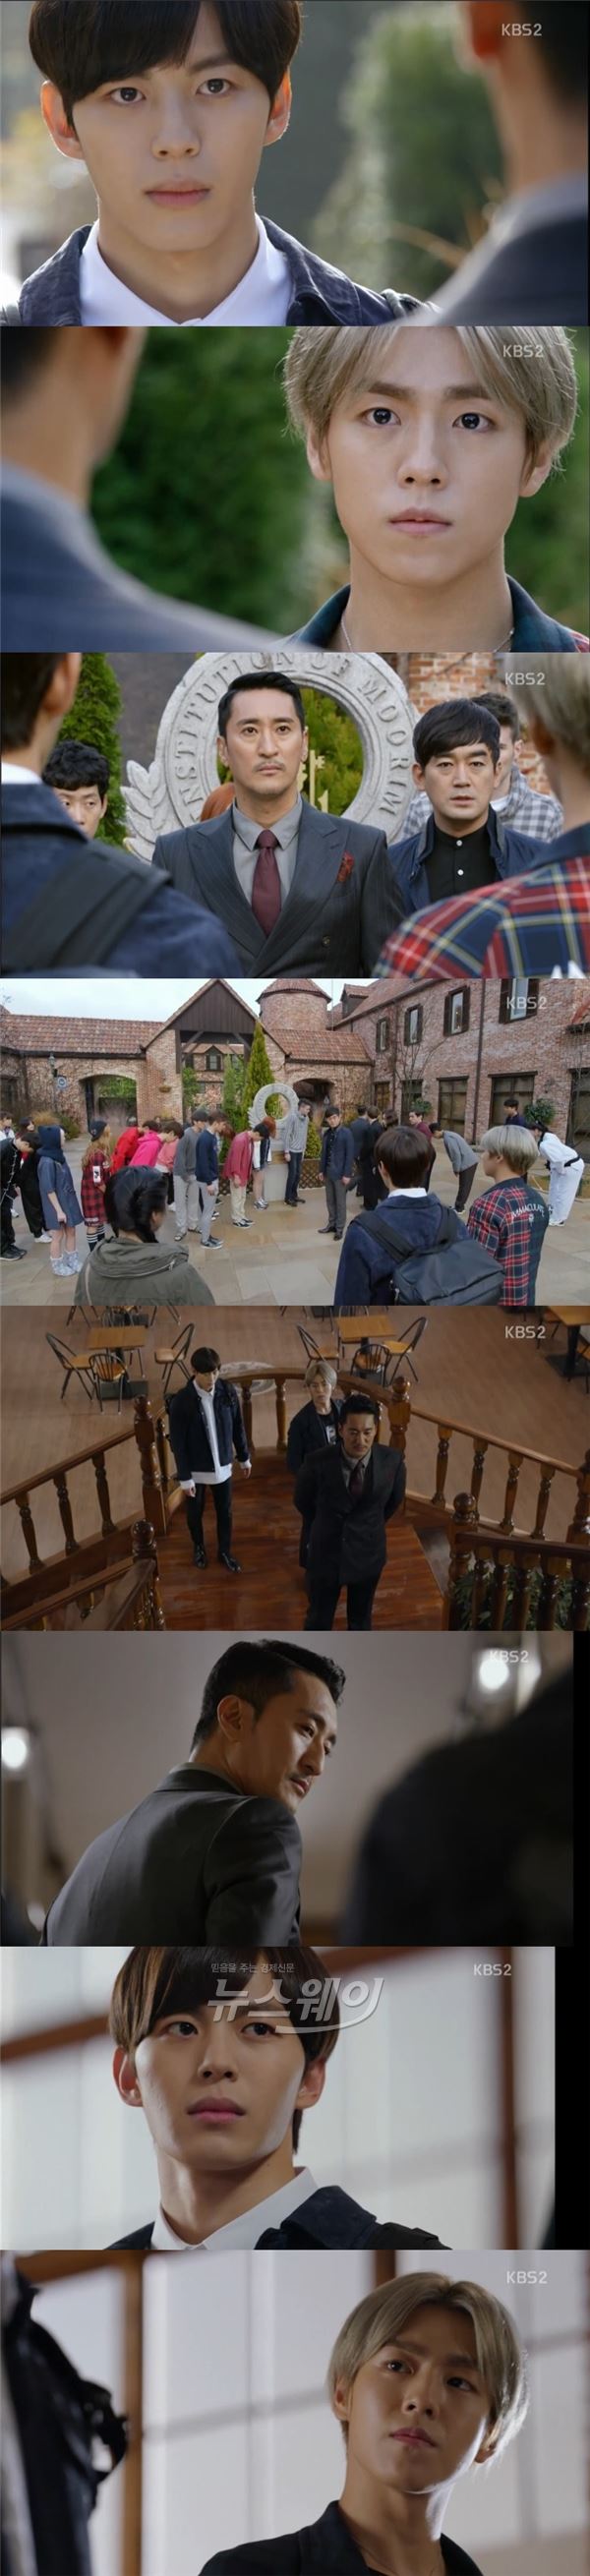 사진 = KBS2 ‘무림학교’ 영상캡쳐